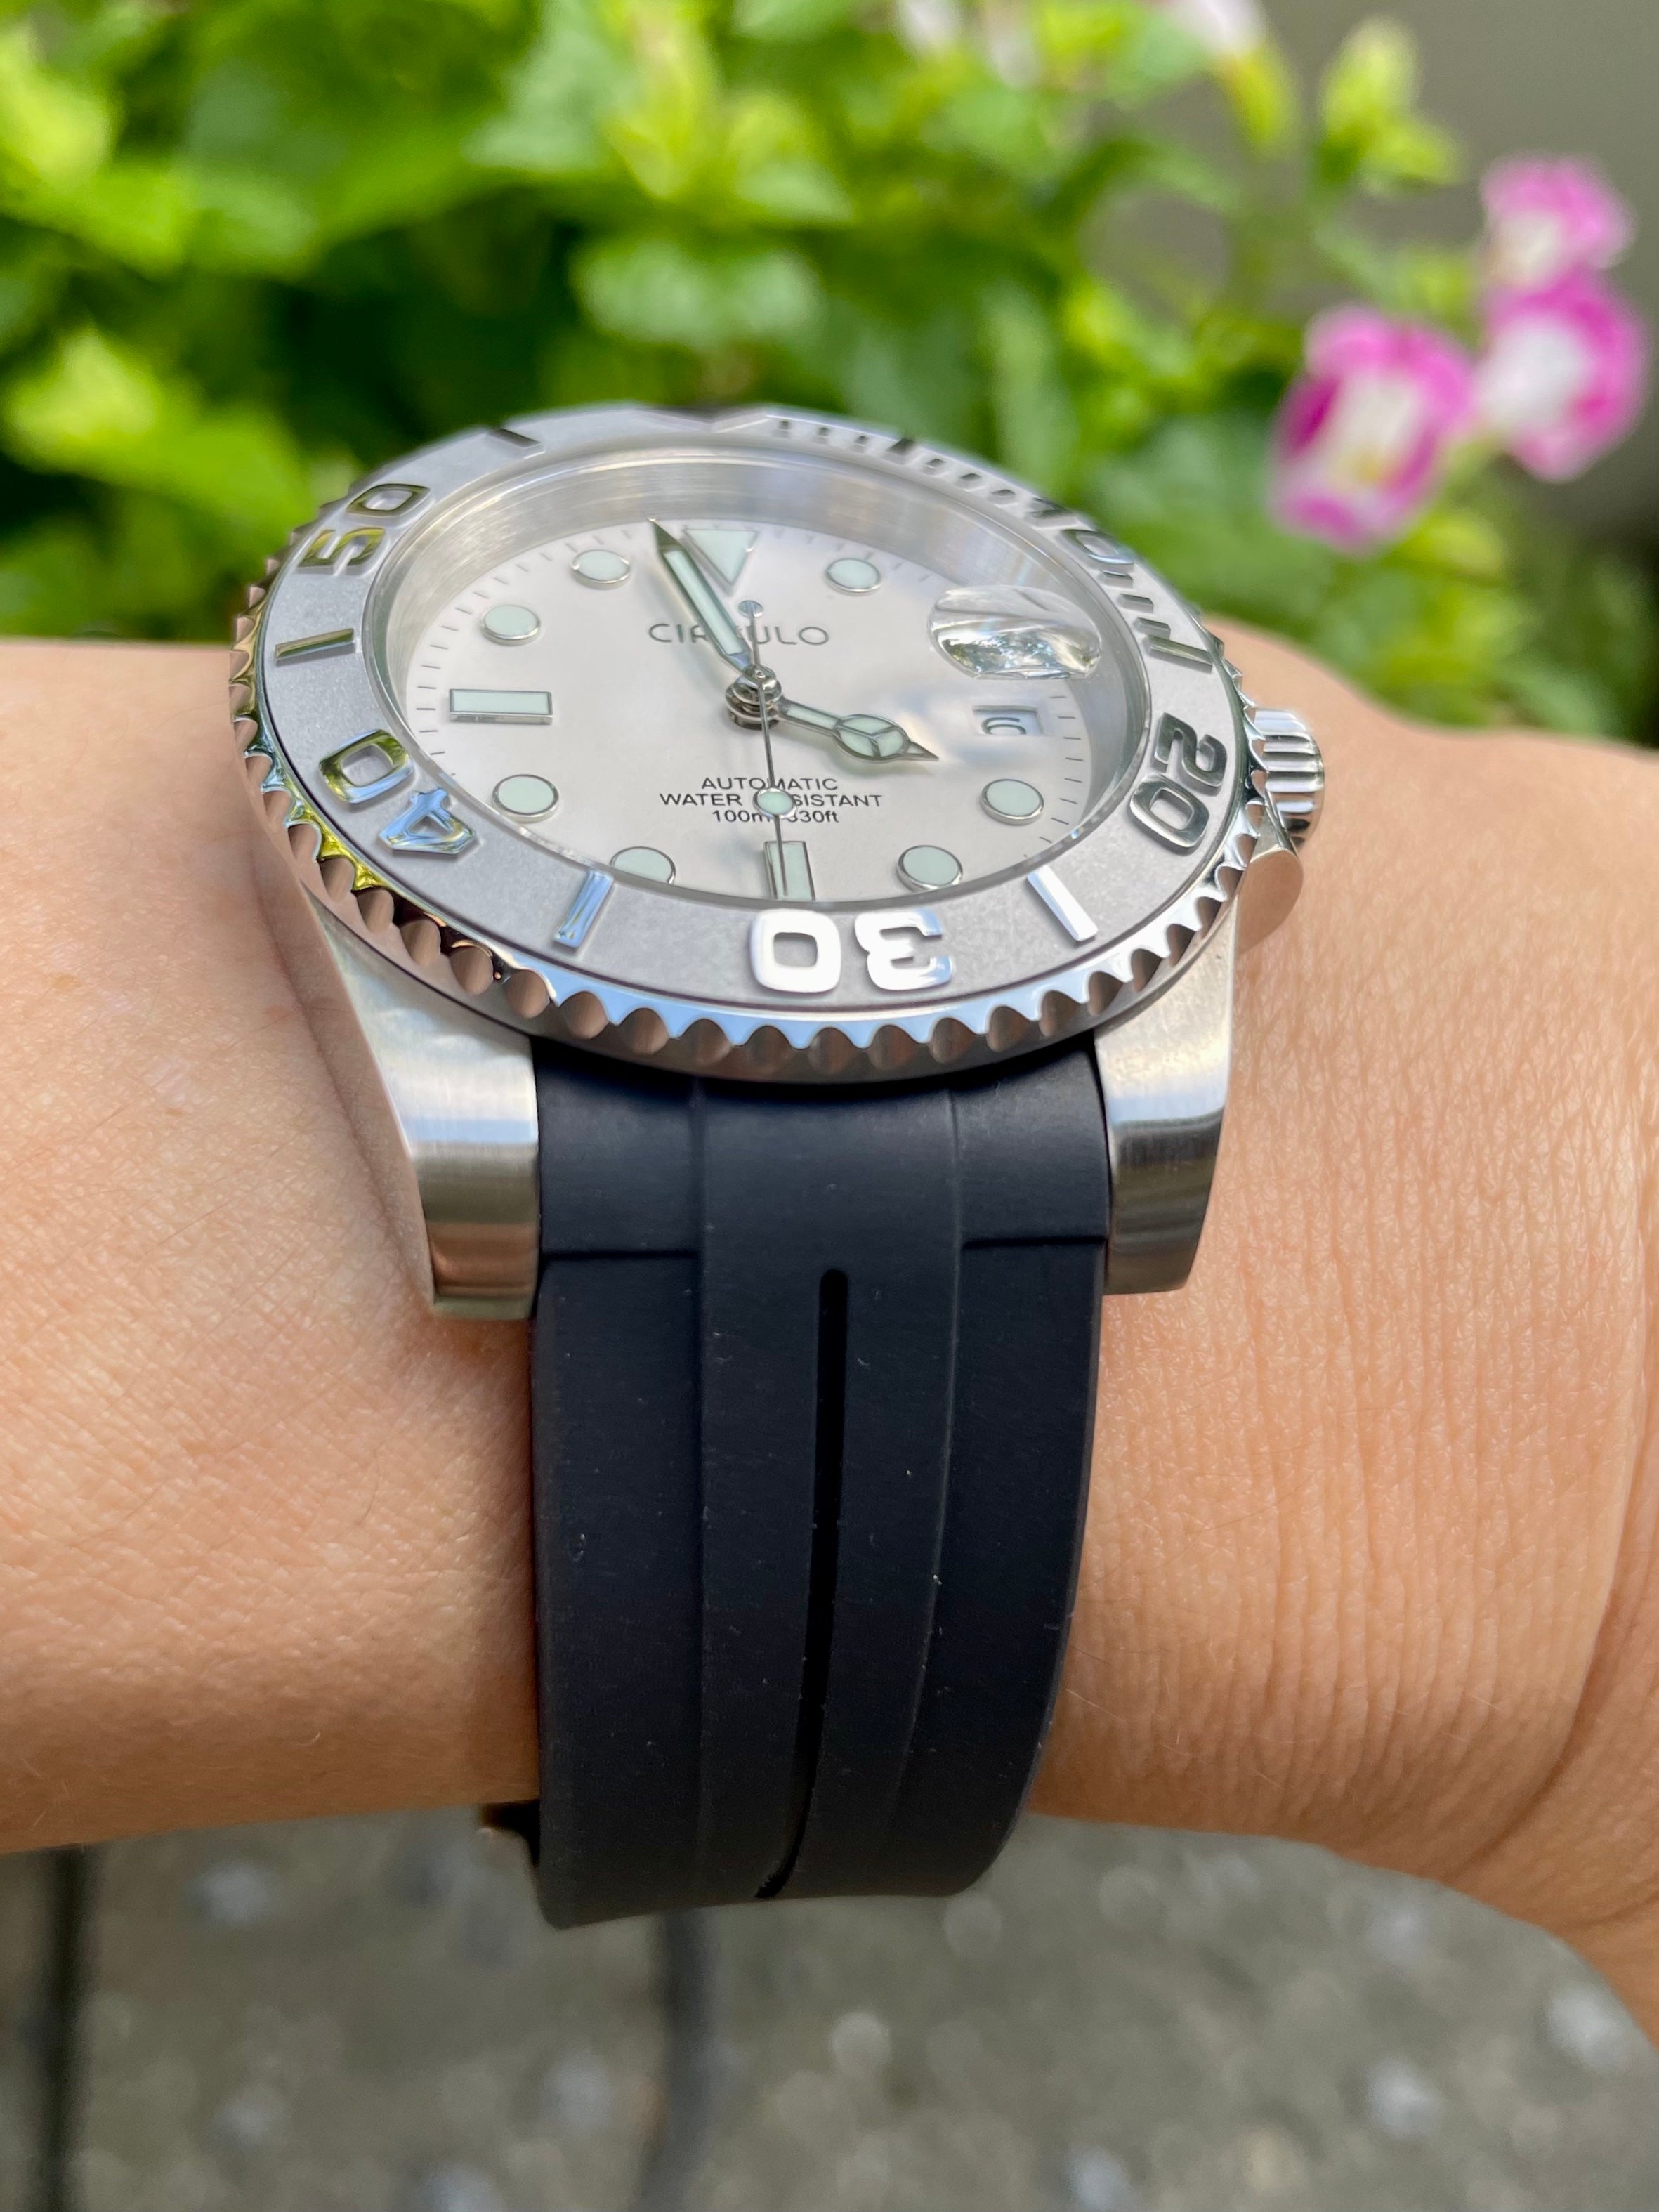 腕時計 メンズ 誕生日 プレゼント 機械式 自動巻き 手巻き付き オマージュウォッチ ラバーバンド シルクロ CIRCULO CI-003